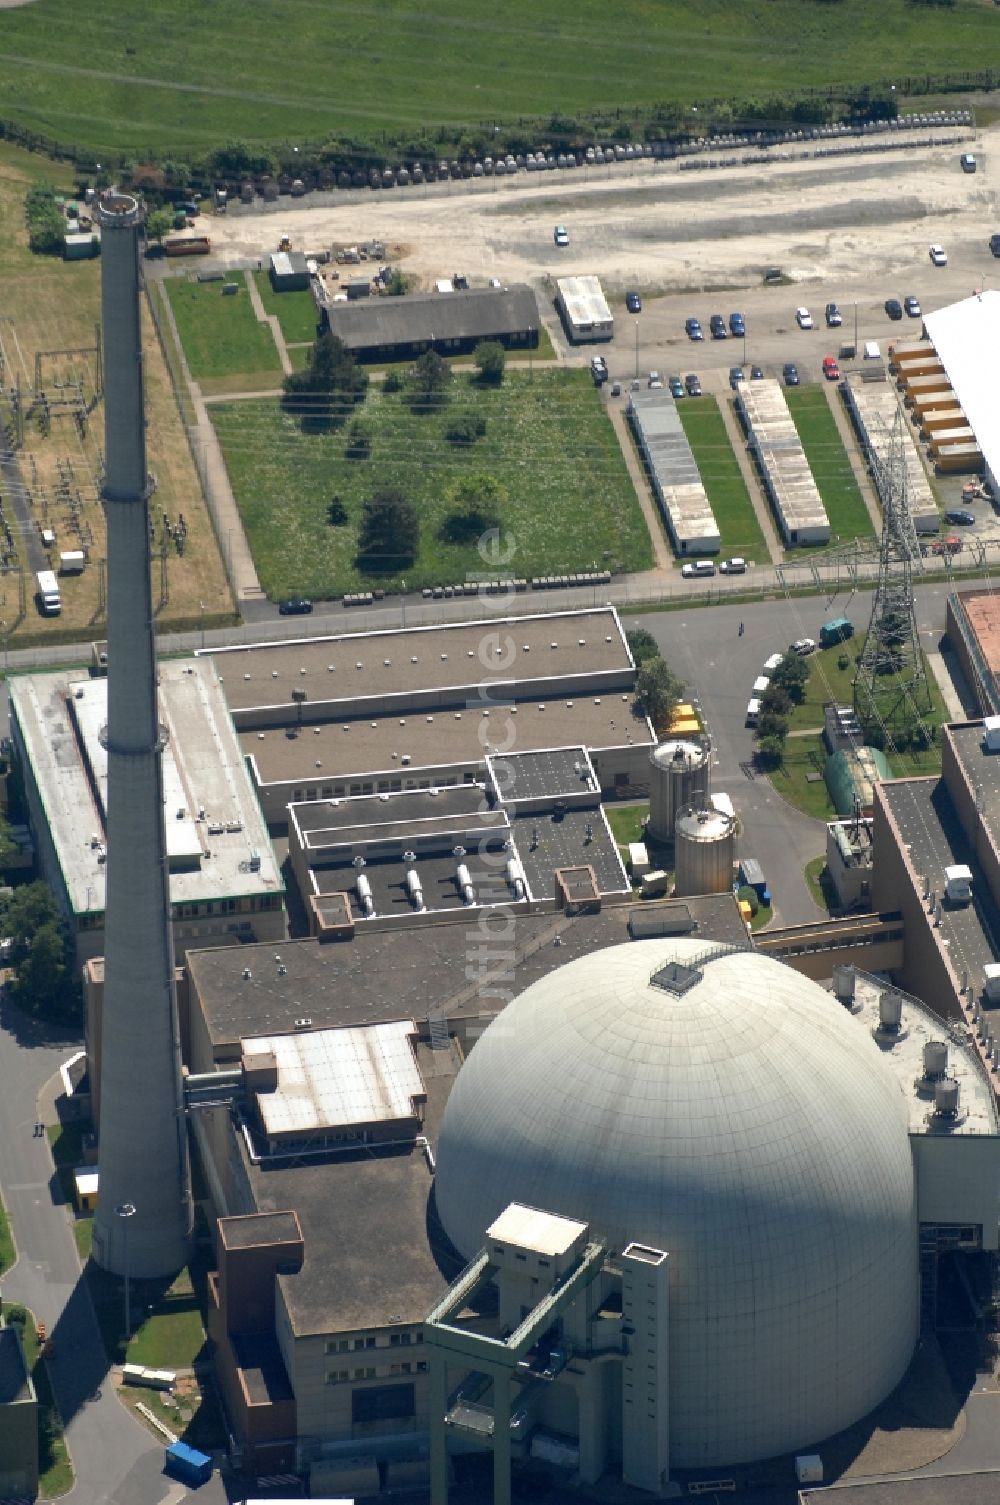 Grafenrheinfeld von oben - Reaktorblöcke und Anlagen des AKW - KKW Kernkraftwerk in Grafenrheinfeld im Bundesland Bayern